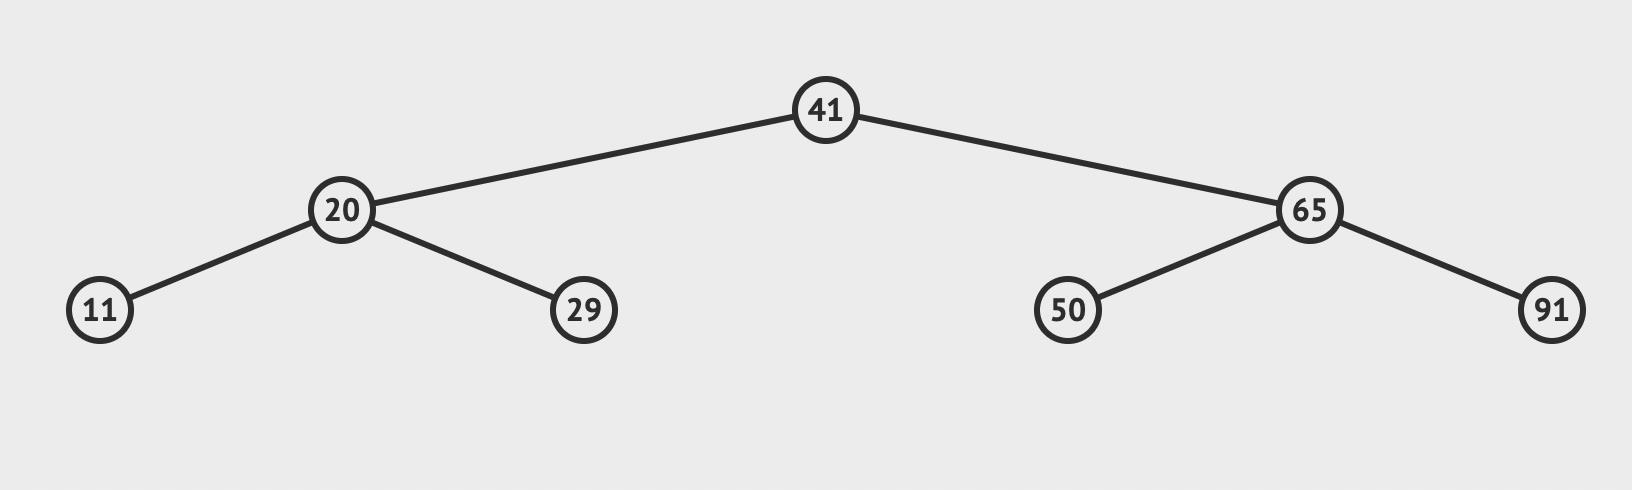 数据结构(二), AVL平衡二叉树 - 文章图片